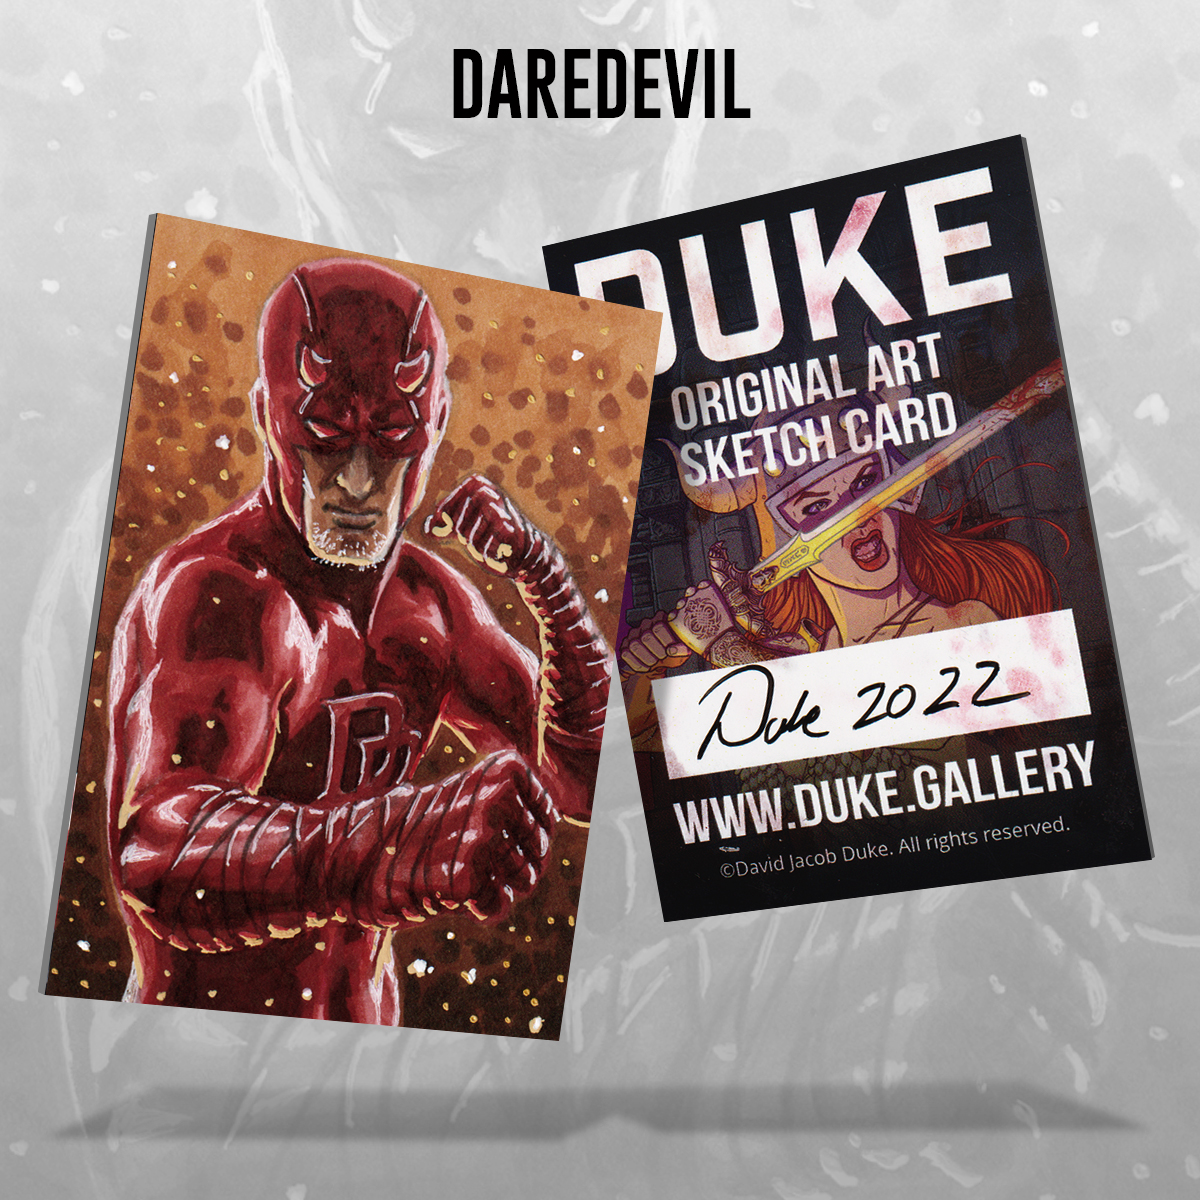 Daredevil Sketch Card by Duke